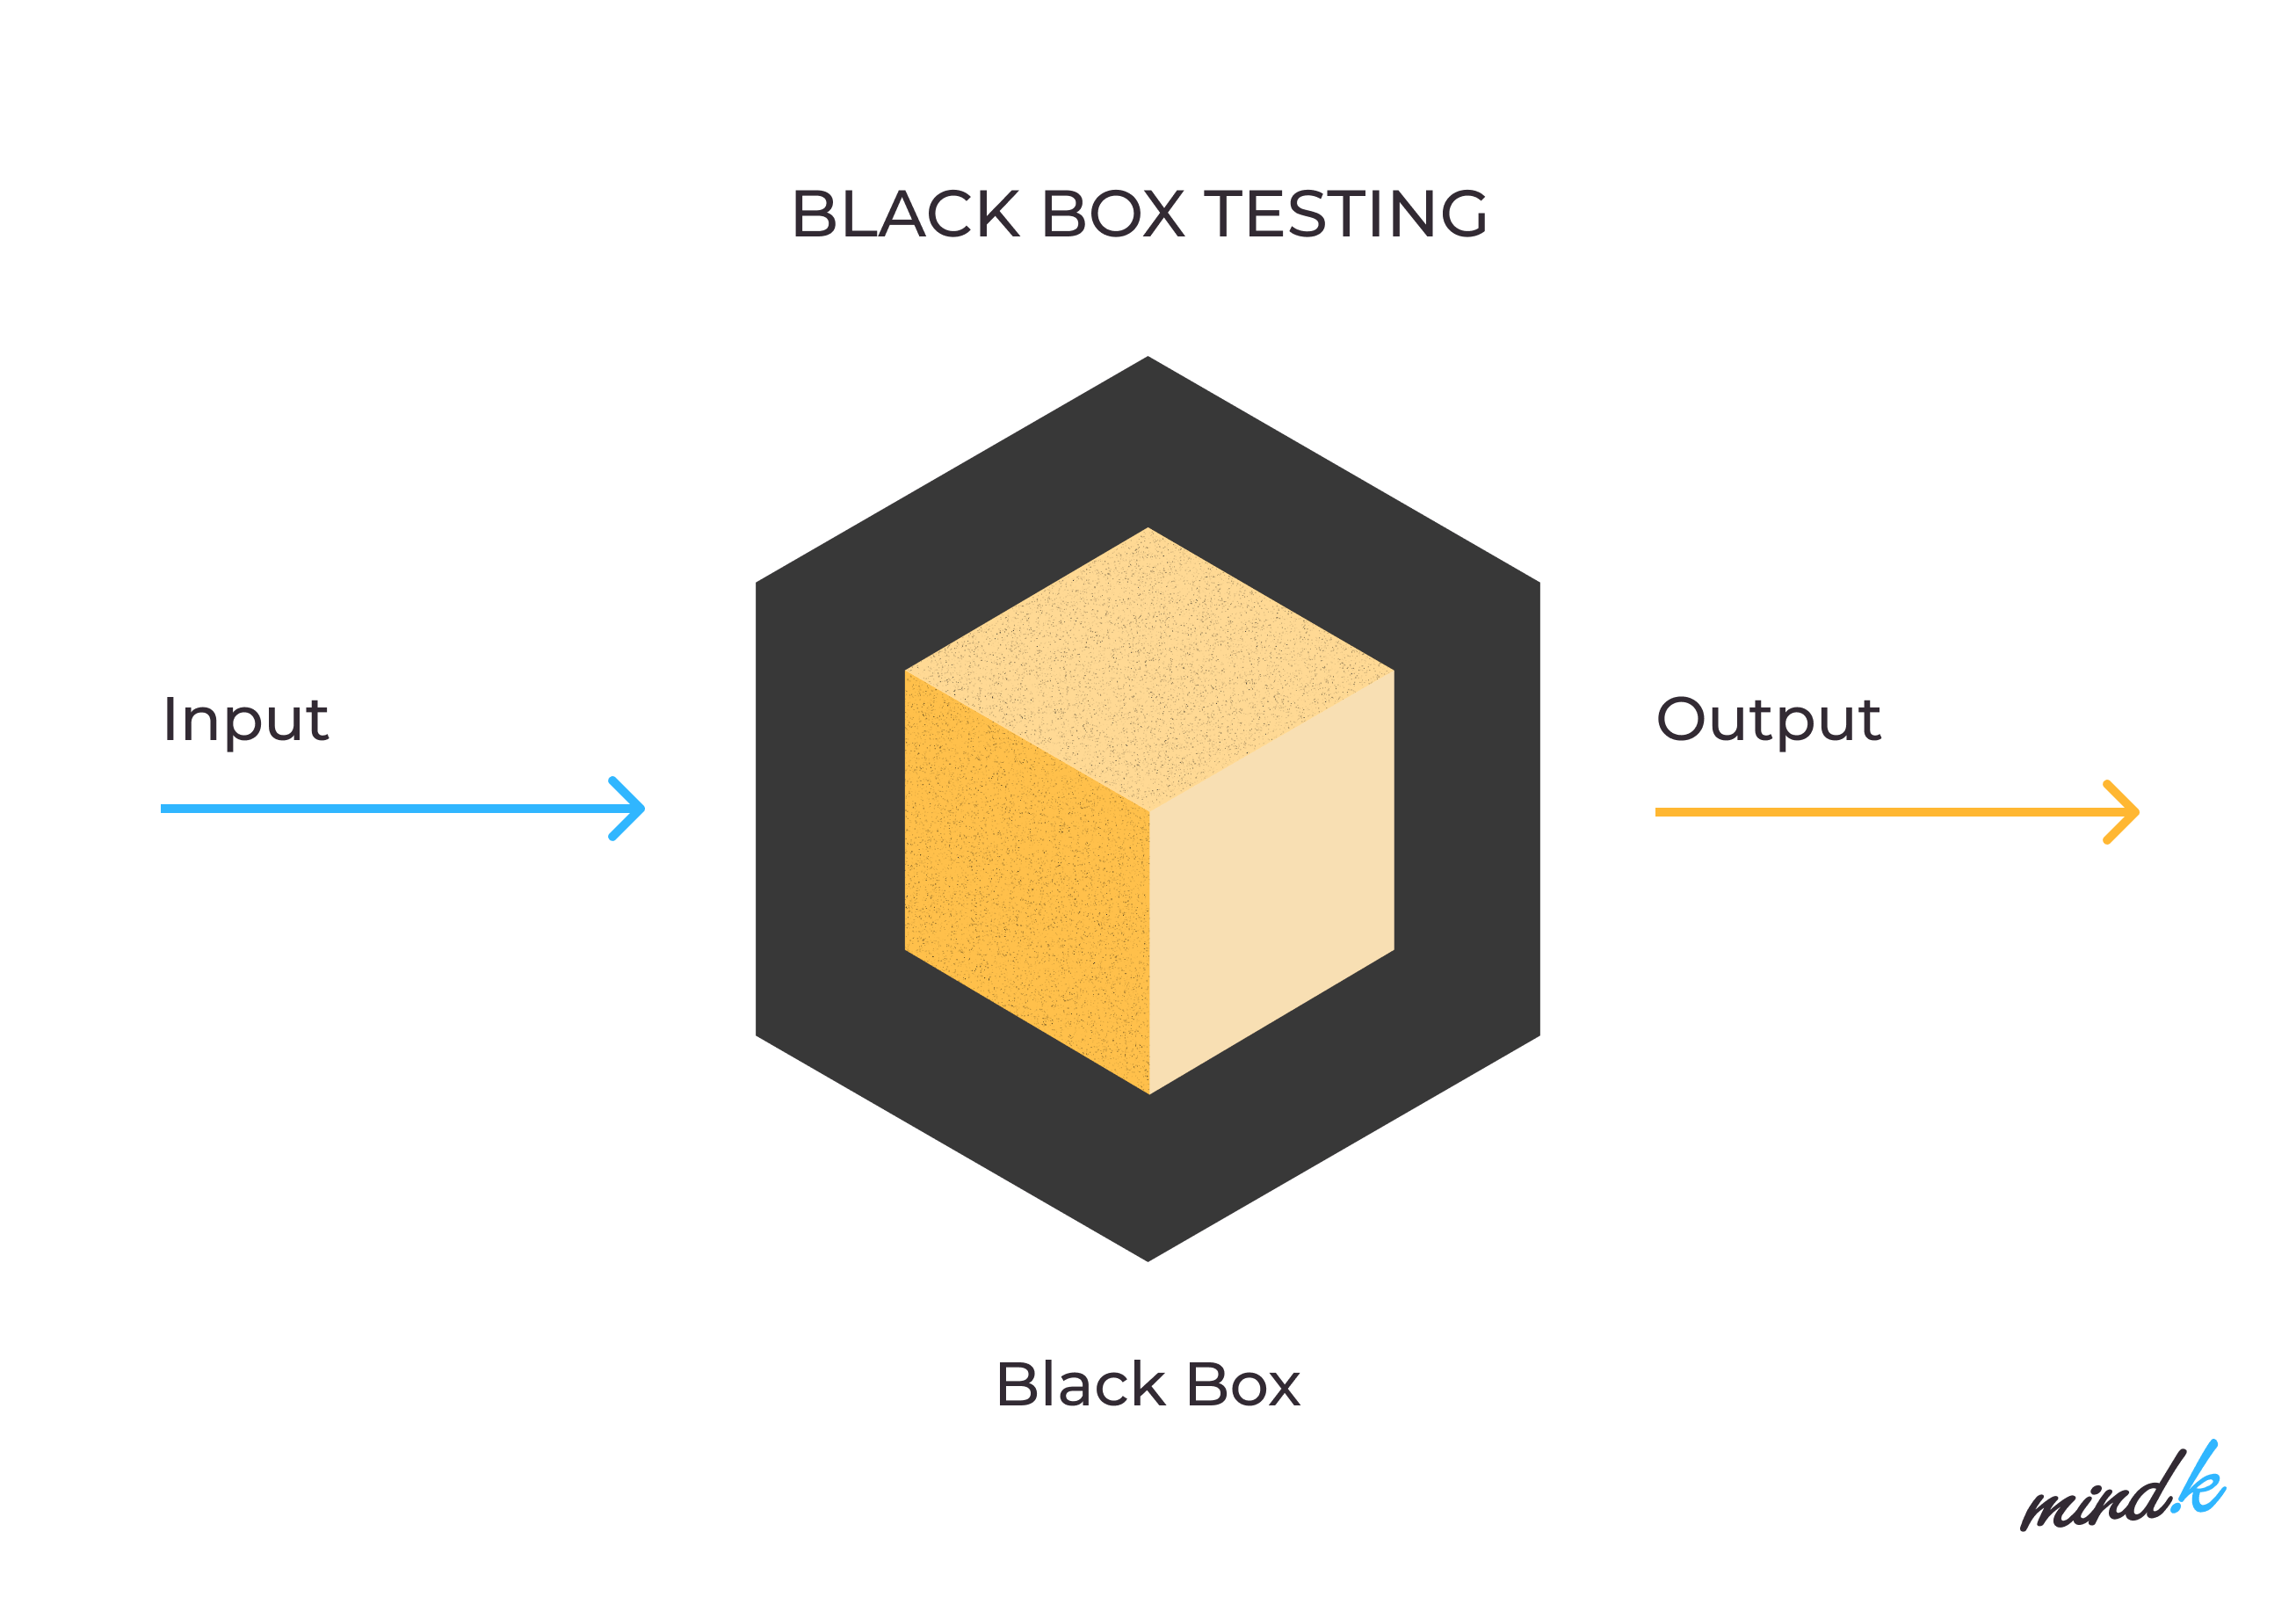 Black box testing